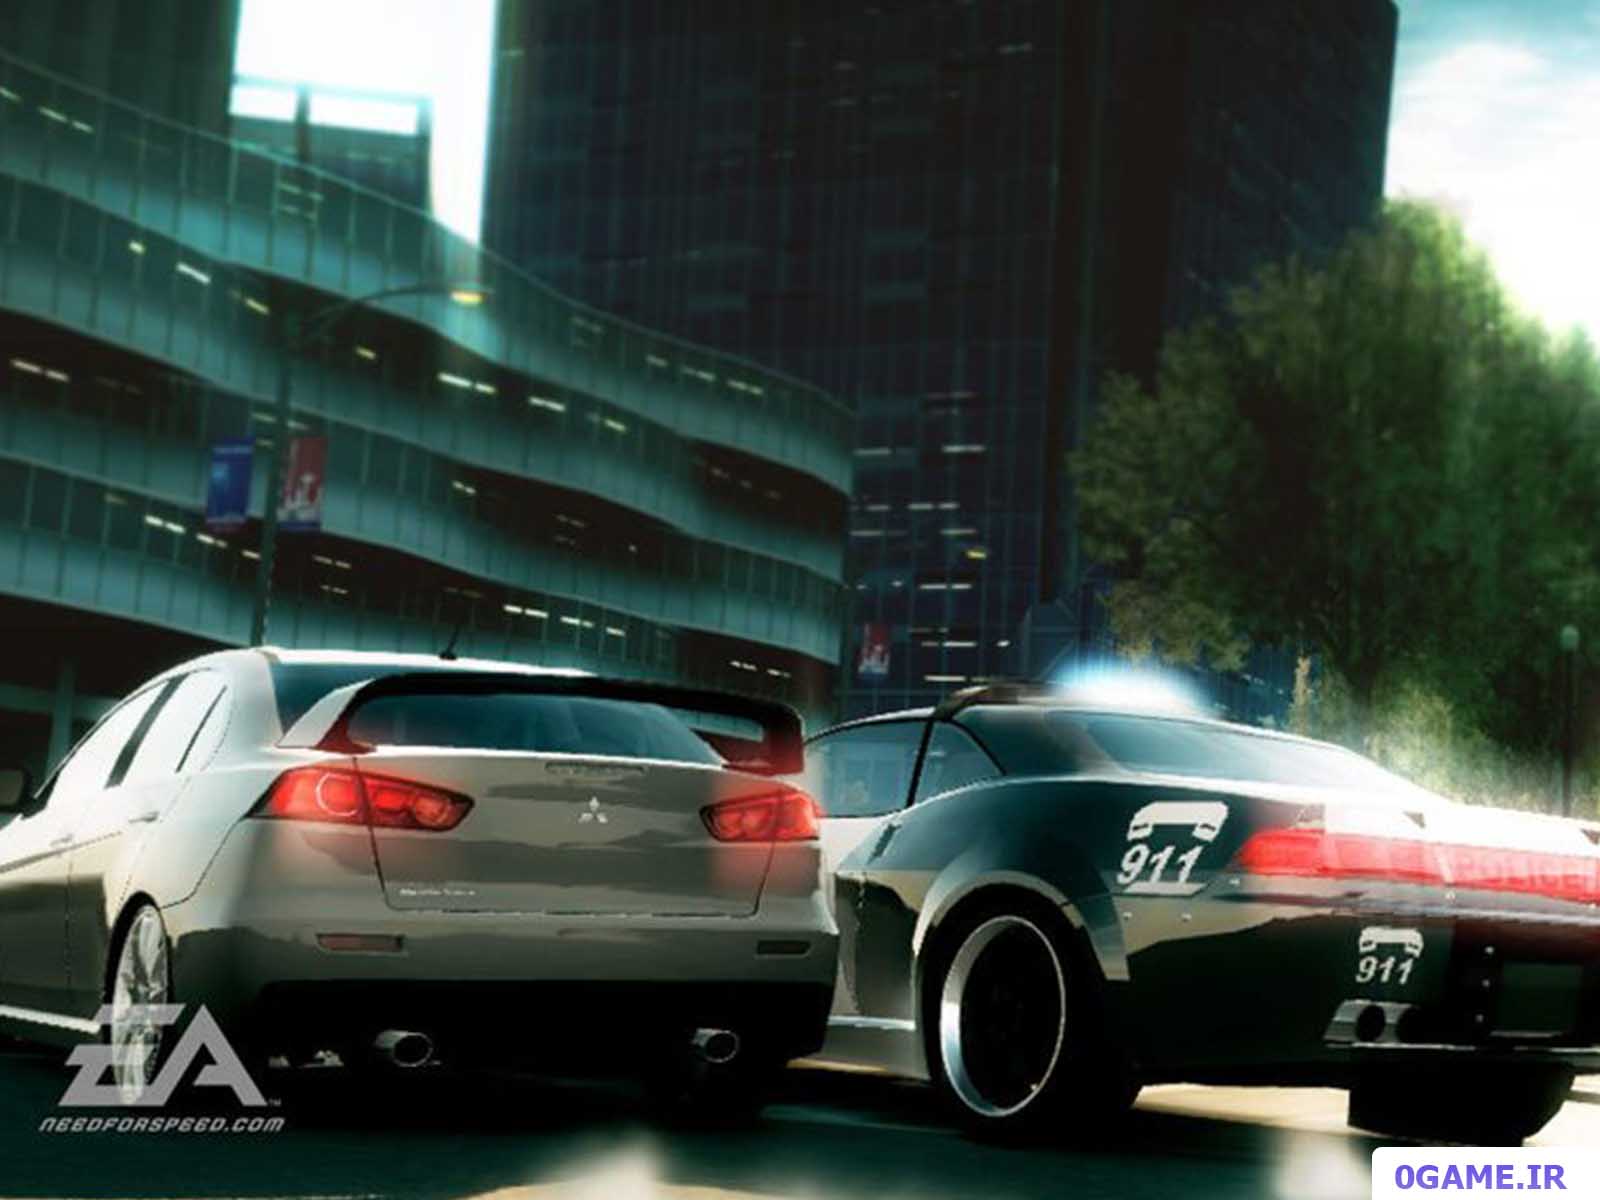 دانلود بازی نید فور اسپید آندرکاور (Need for Speed: Undercover) نسخه کامل برای کامپیوتر